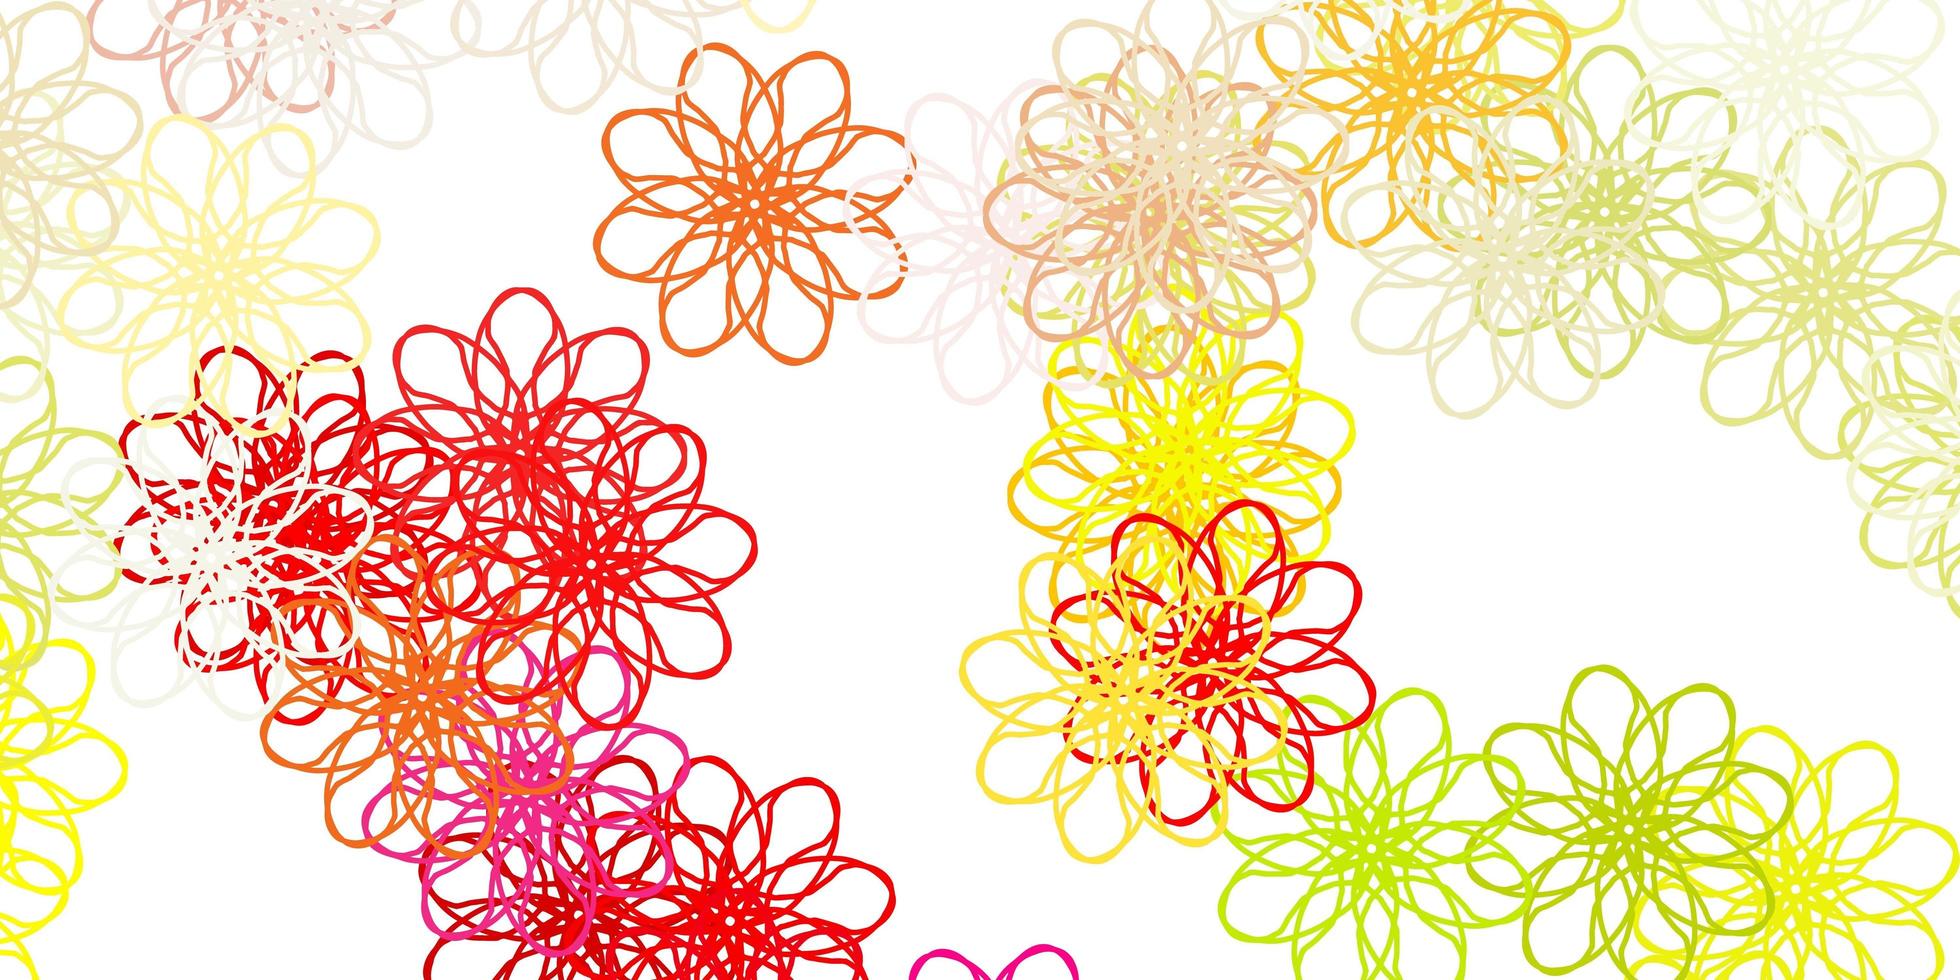 texture de doodle vecteur multicolore clair avec des fleurs.